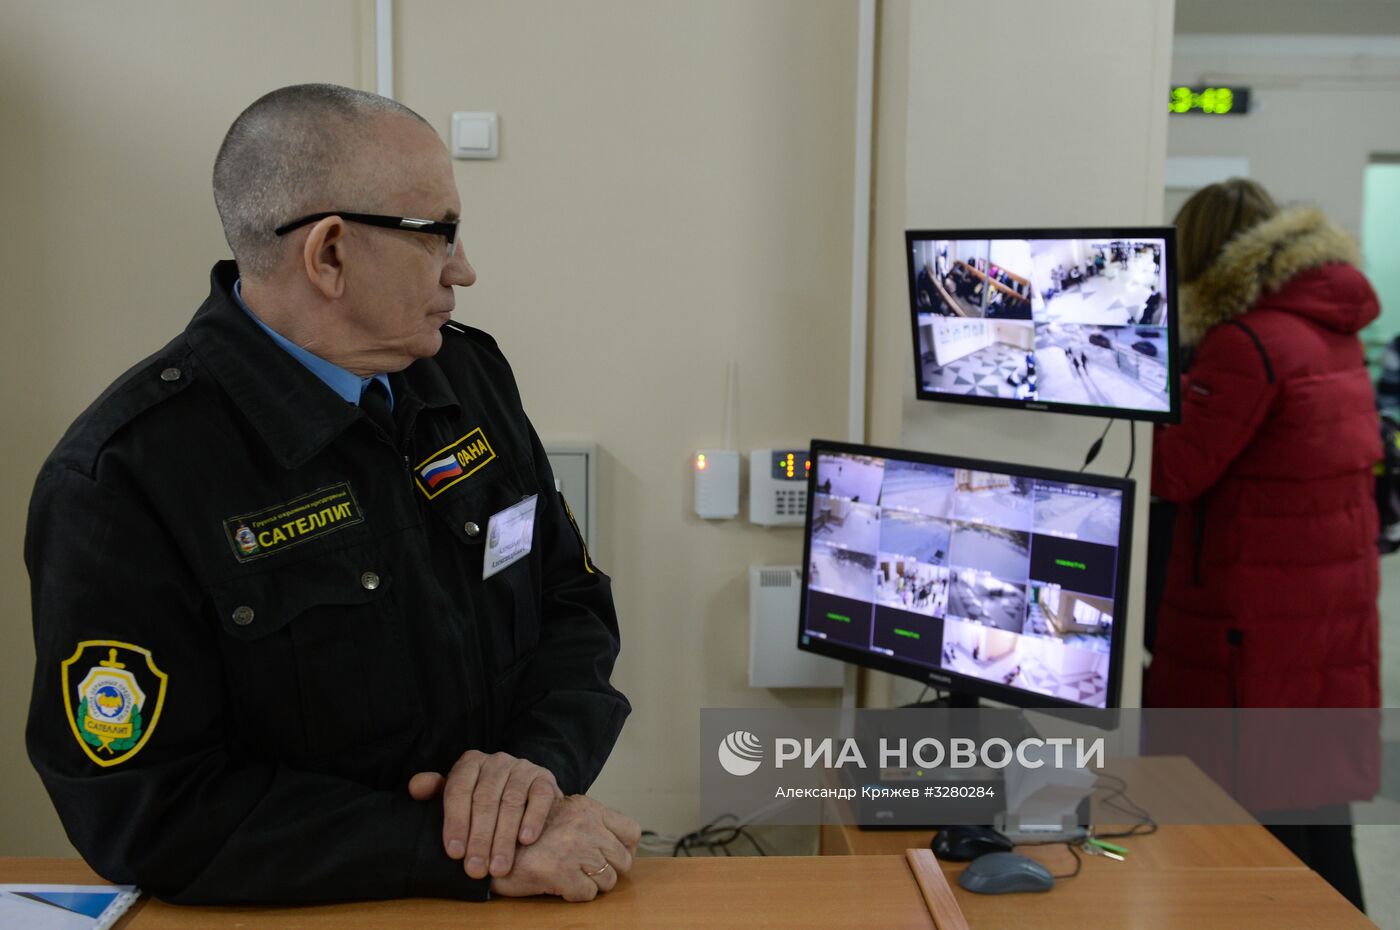 Обеспечение безопасности в российских школах